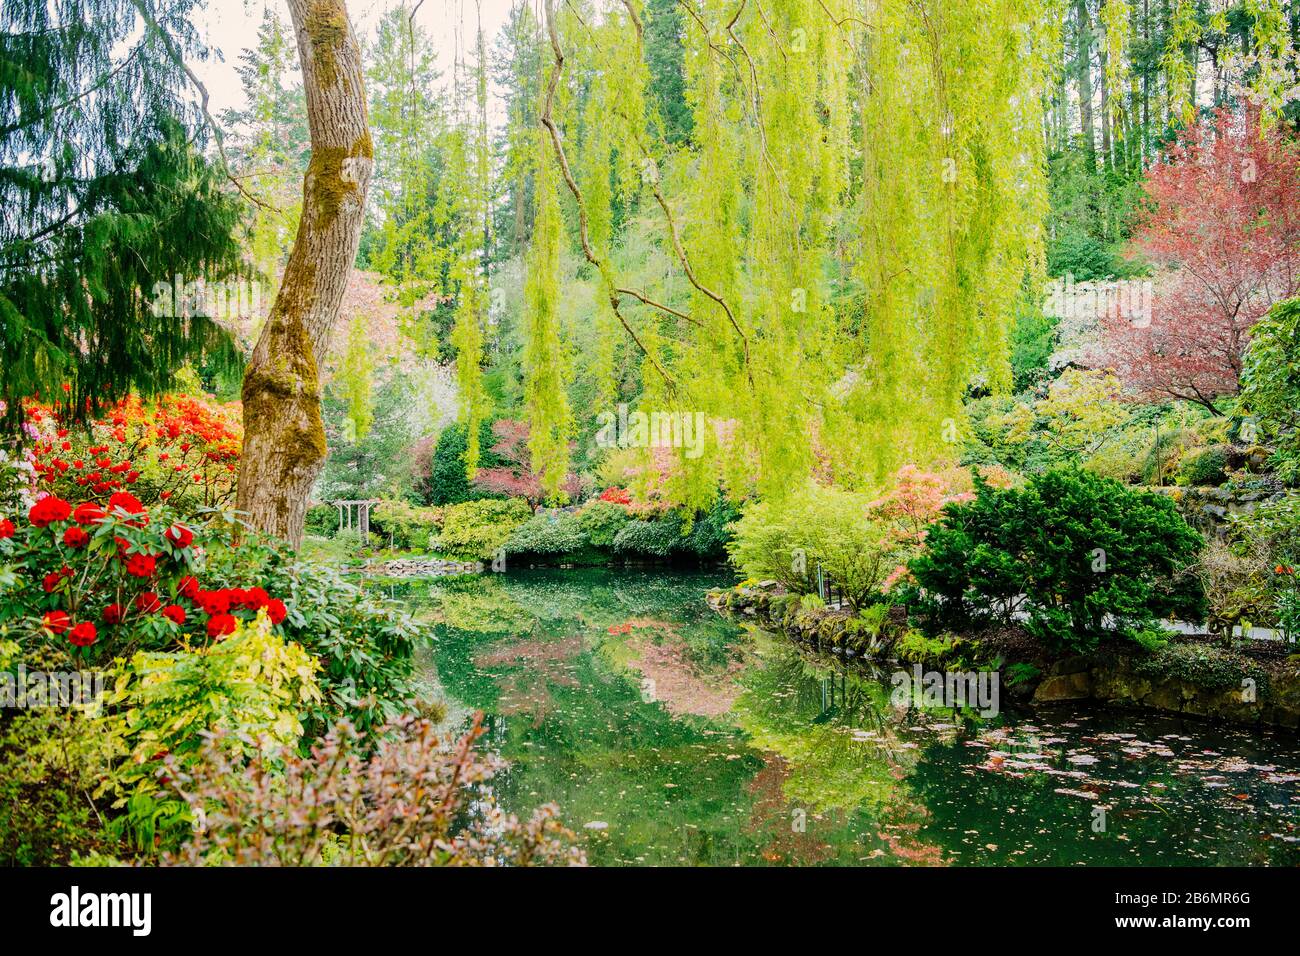 Blick auf blühende Bäume und Blumen im Garten, Butchart Gardens, Vancouver Island, British Columbia, Kanada Stockfoto